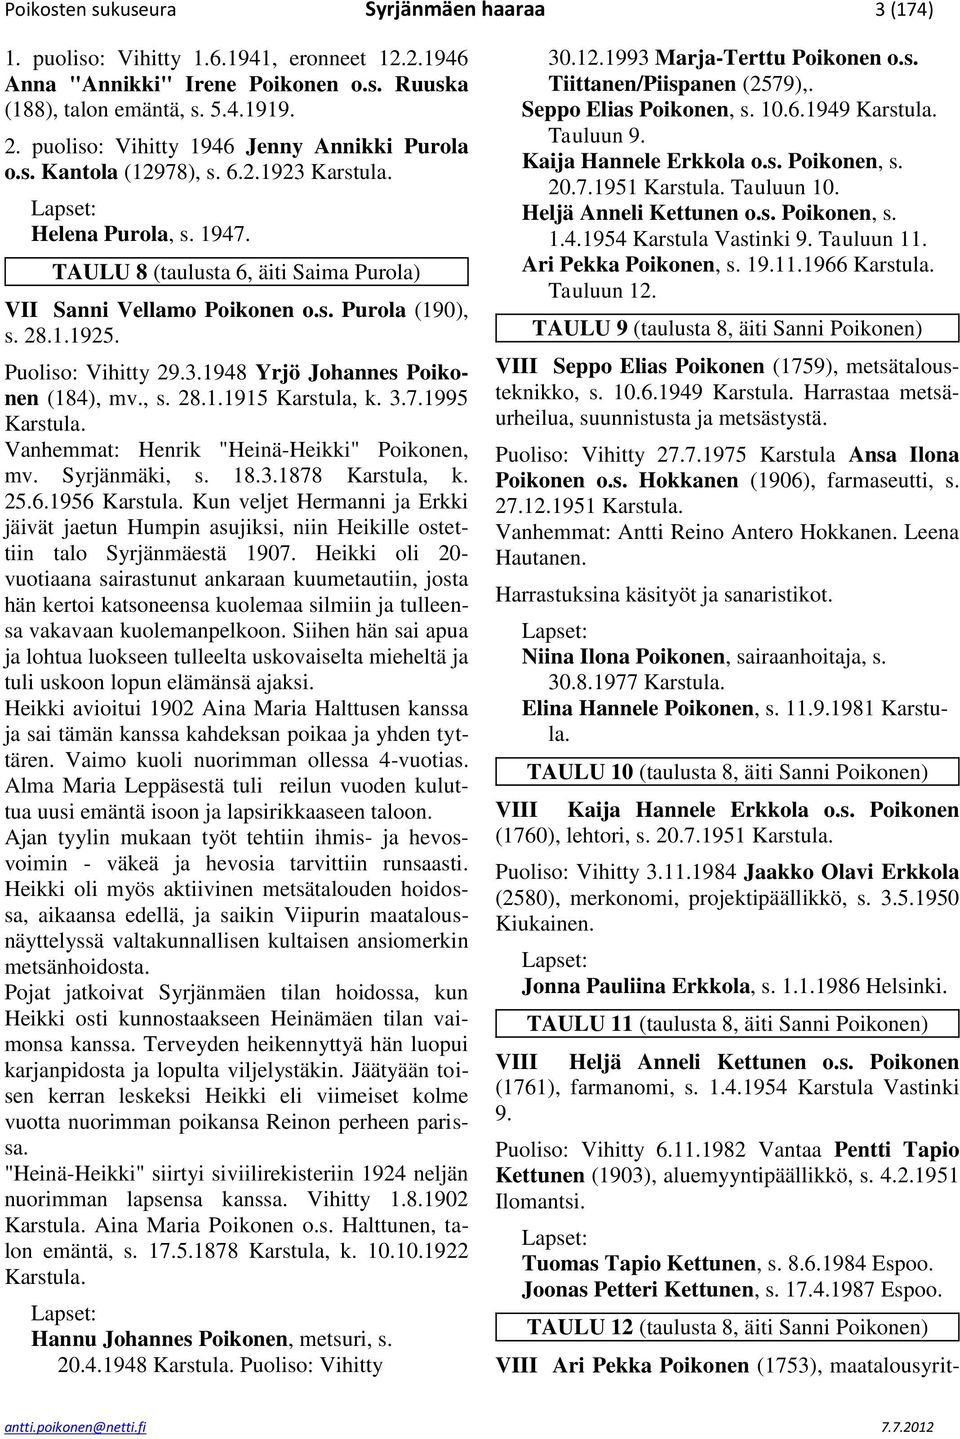 Puoliso: Vihitty 29.3.1948 Yrjö Johannes Poikonen (184), mv., s. 28.1.1915 Karstula, k. 3.7.1995 Vanhemmat: Henrik "Heinä-Heikki" Poikonen, mv. Syrjänmäki, s. 18.3.1878 Karstula, k. 25.6.